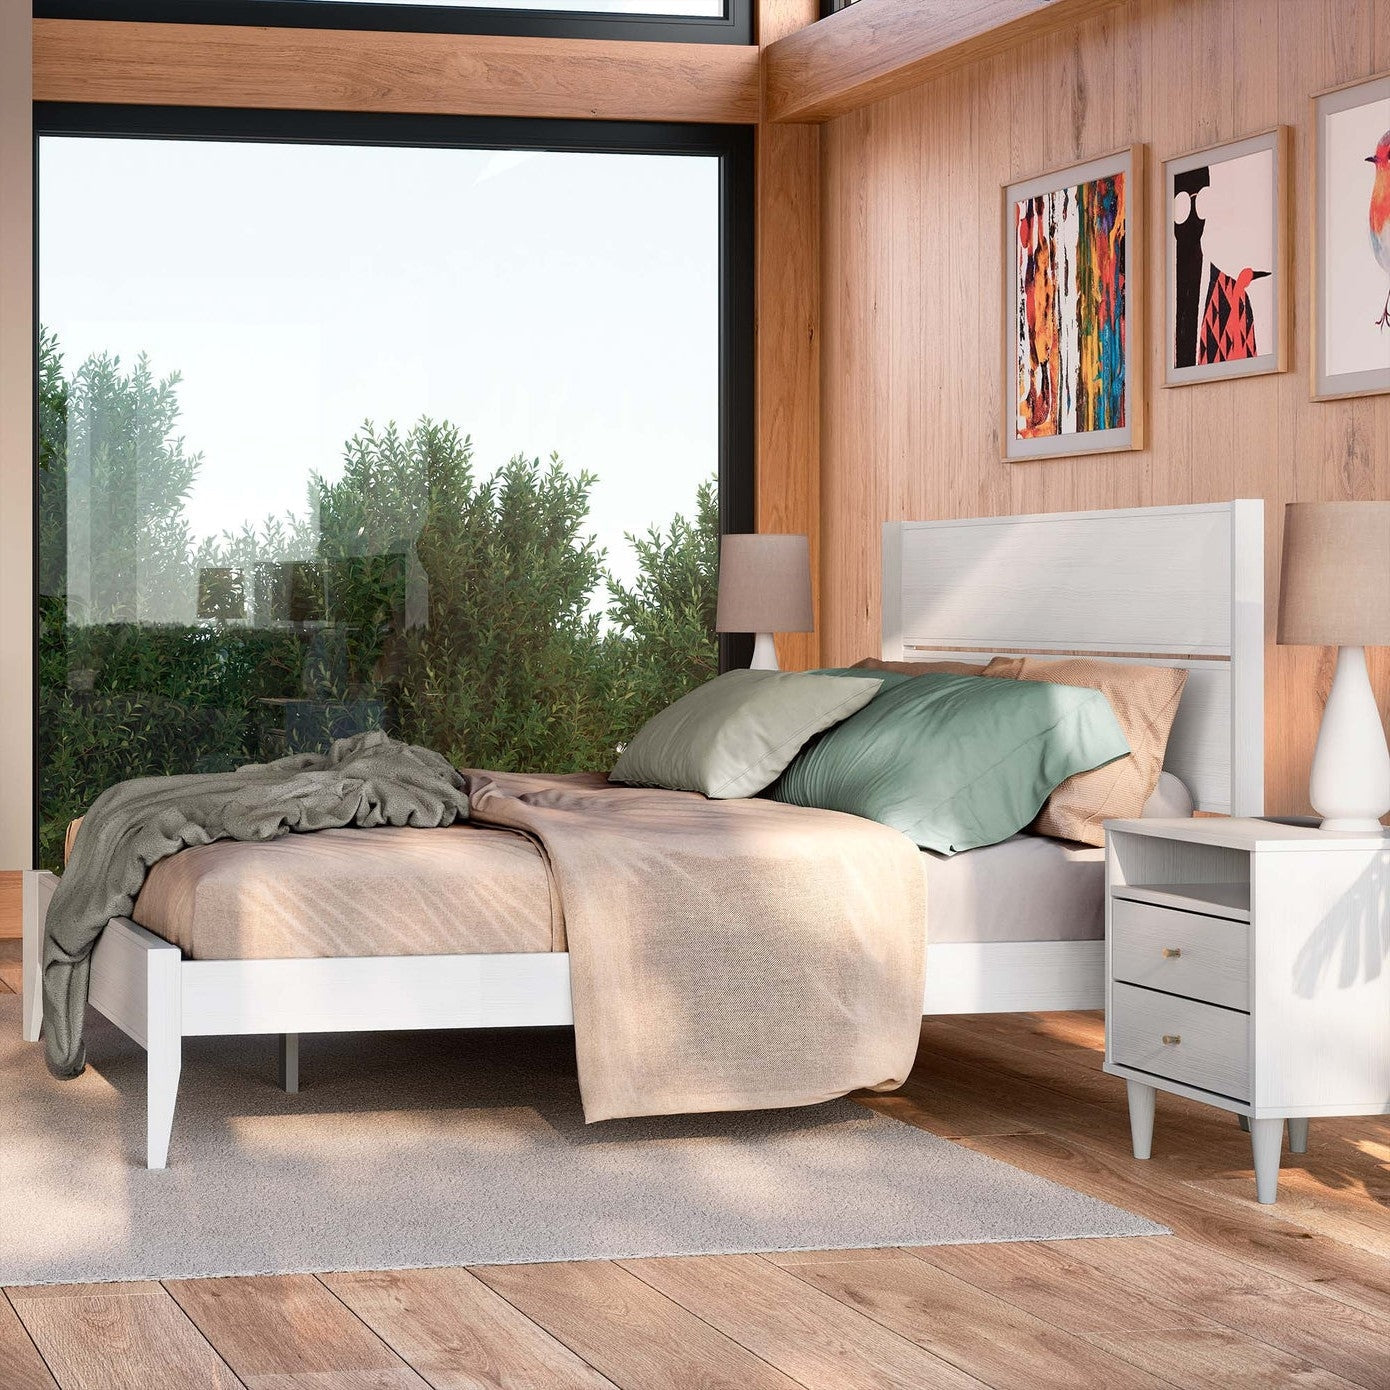 Bedroom > Bed Frames > Platform Beds - King Size Rustic White Mid Century Slatted Platform Bed